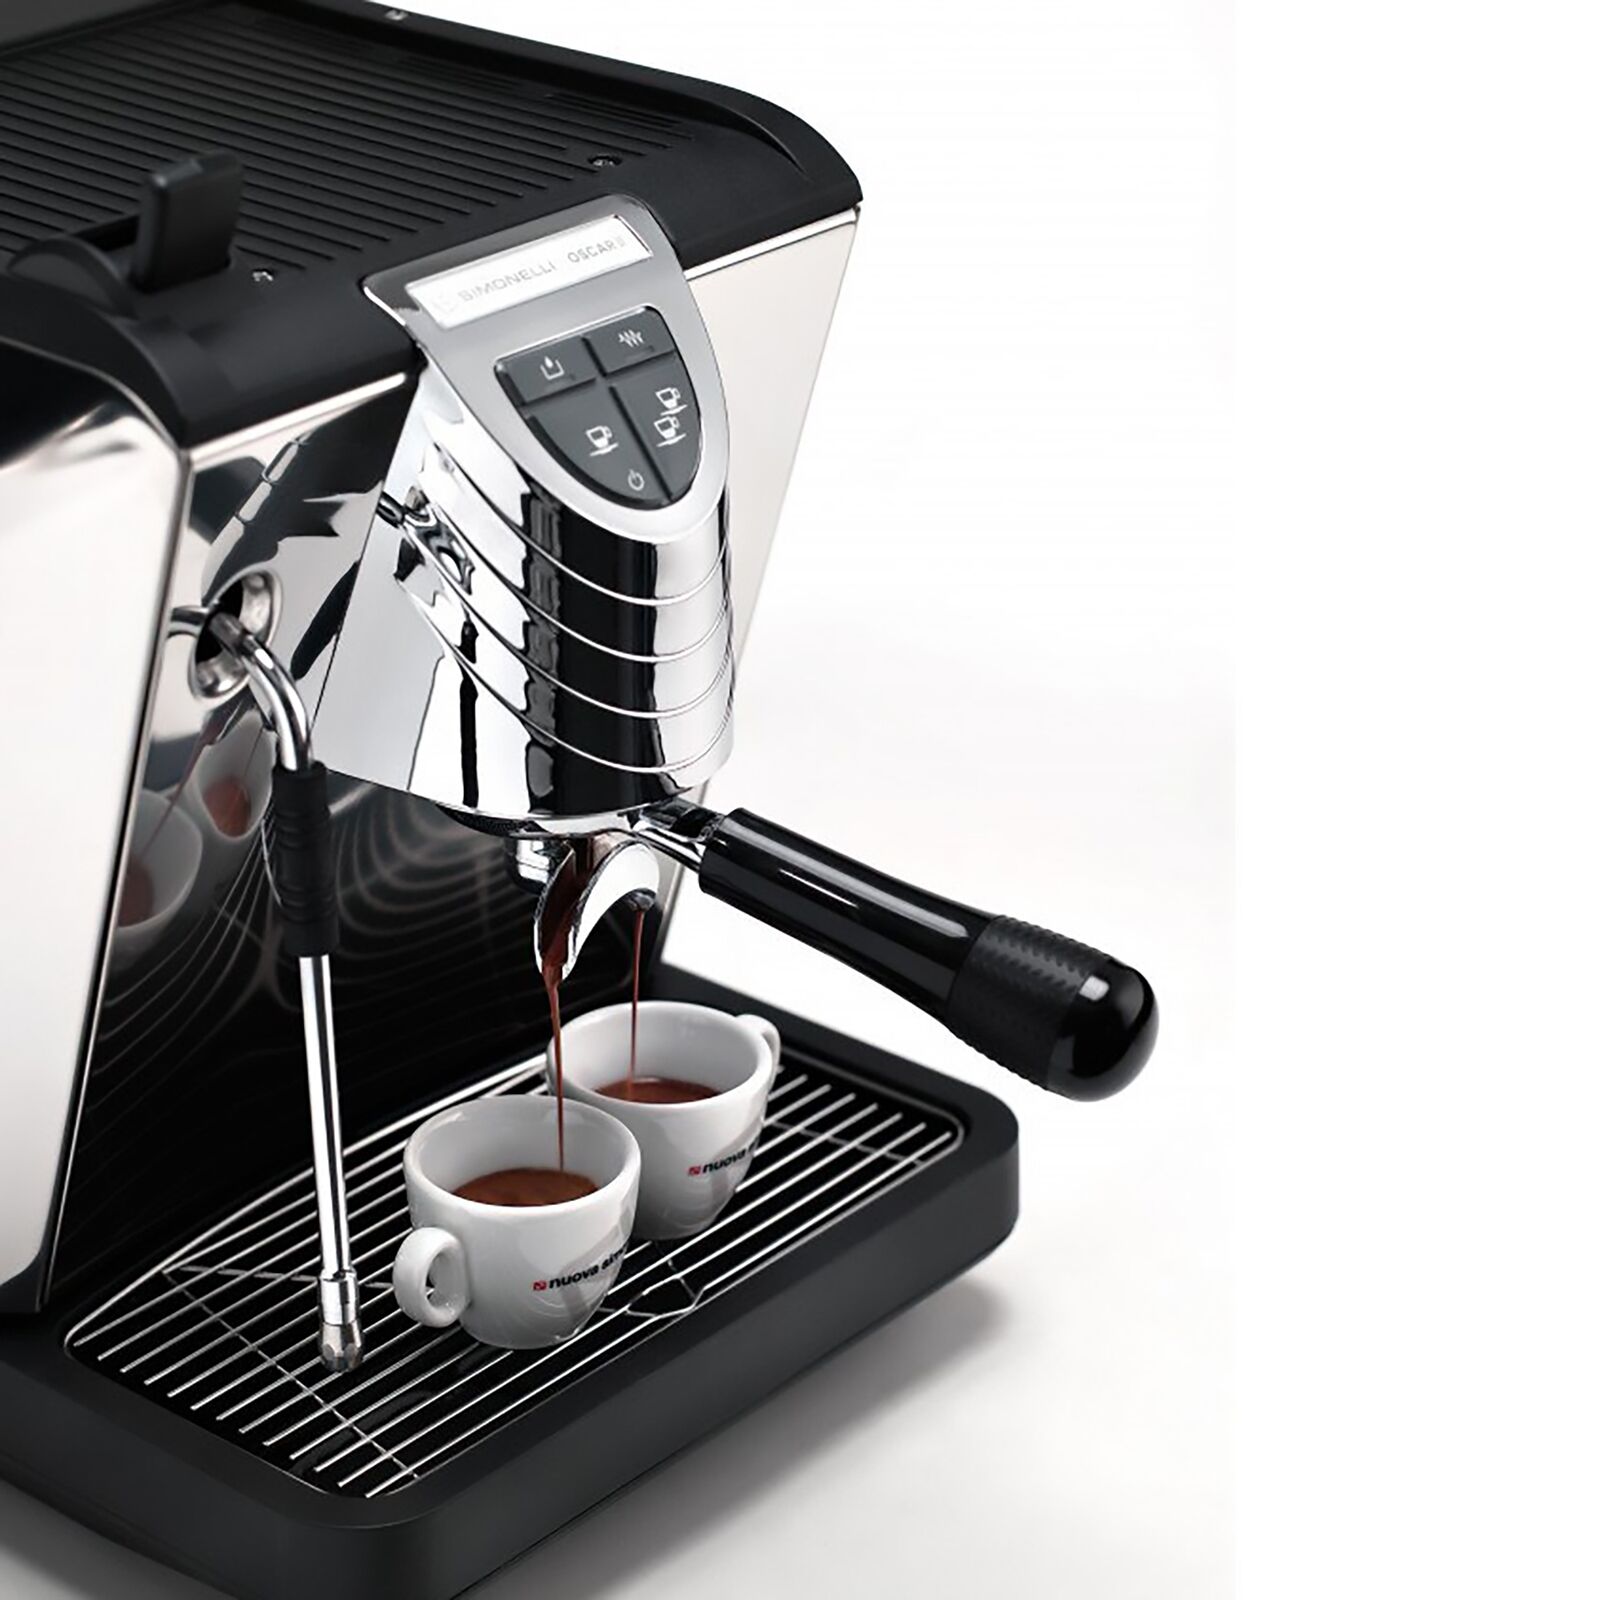 Nuova Simonelli Oscar II Espresso Machine - Stainless Steel for 